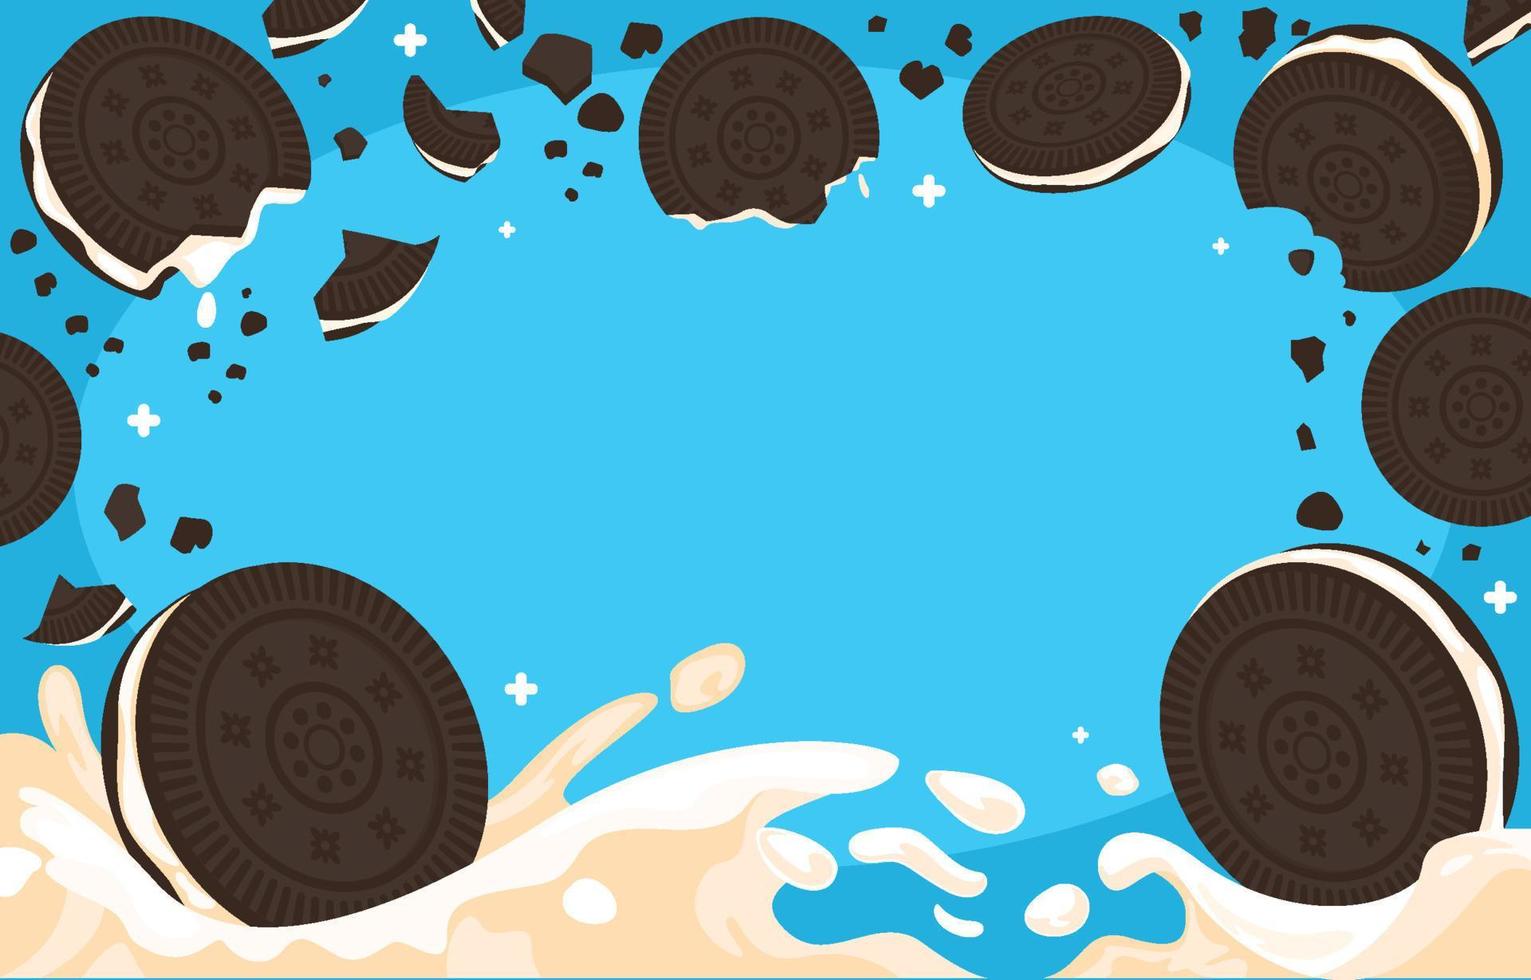 schwarz Kekse mit Sahne und planschen Milch vektor